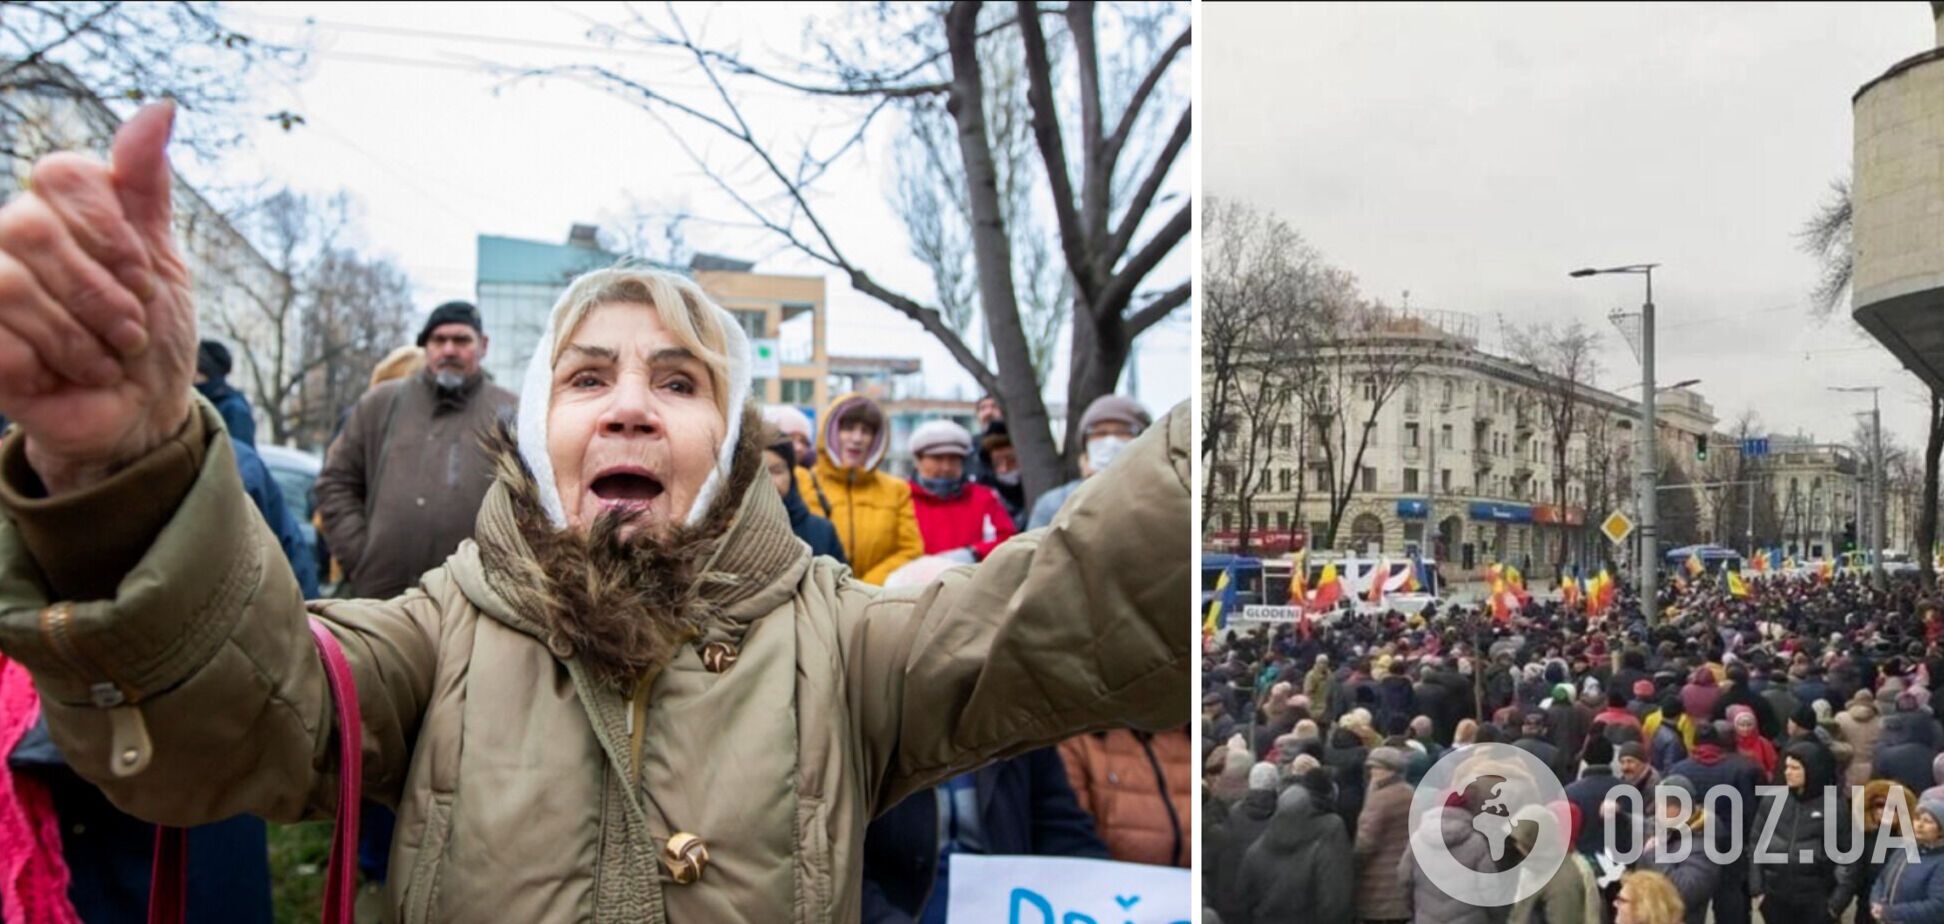 Блокували дороги та викрикували проросійські гасла: партія 'Шор' влаштувала акції протесту в столиці Молдови. Фото і відео